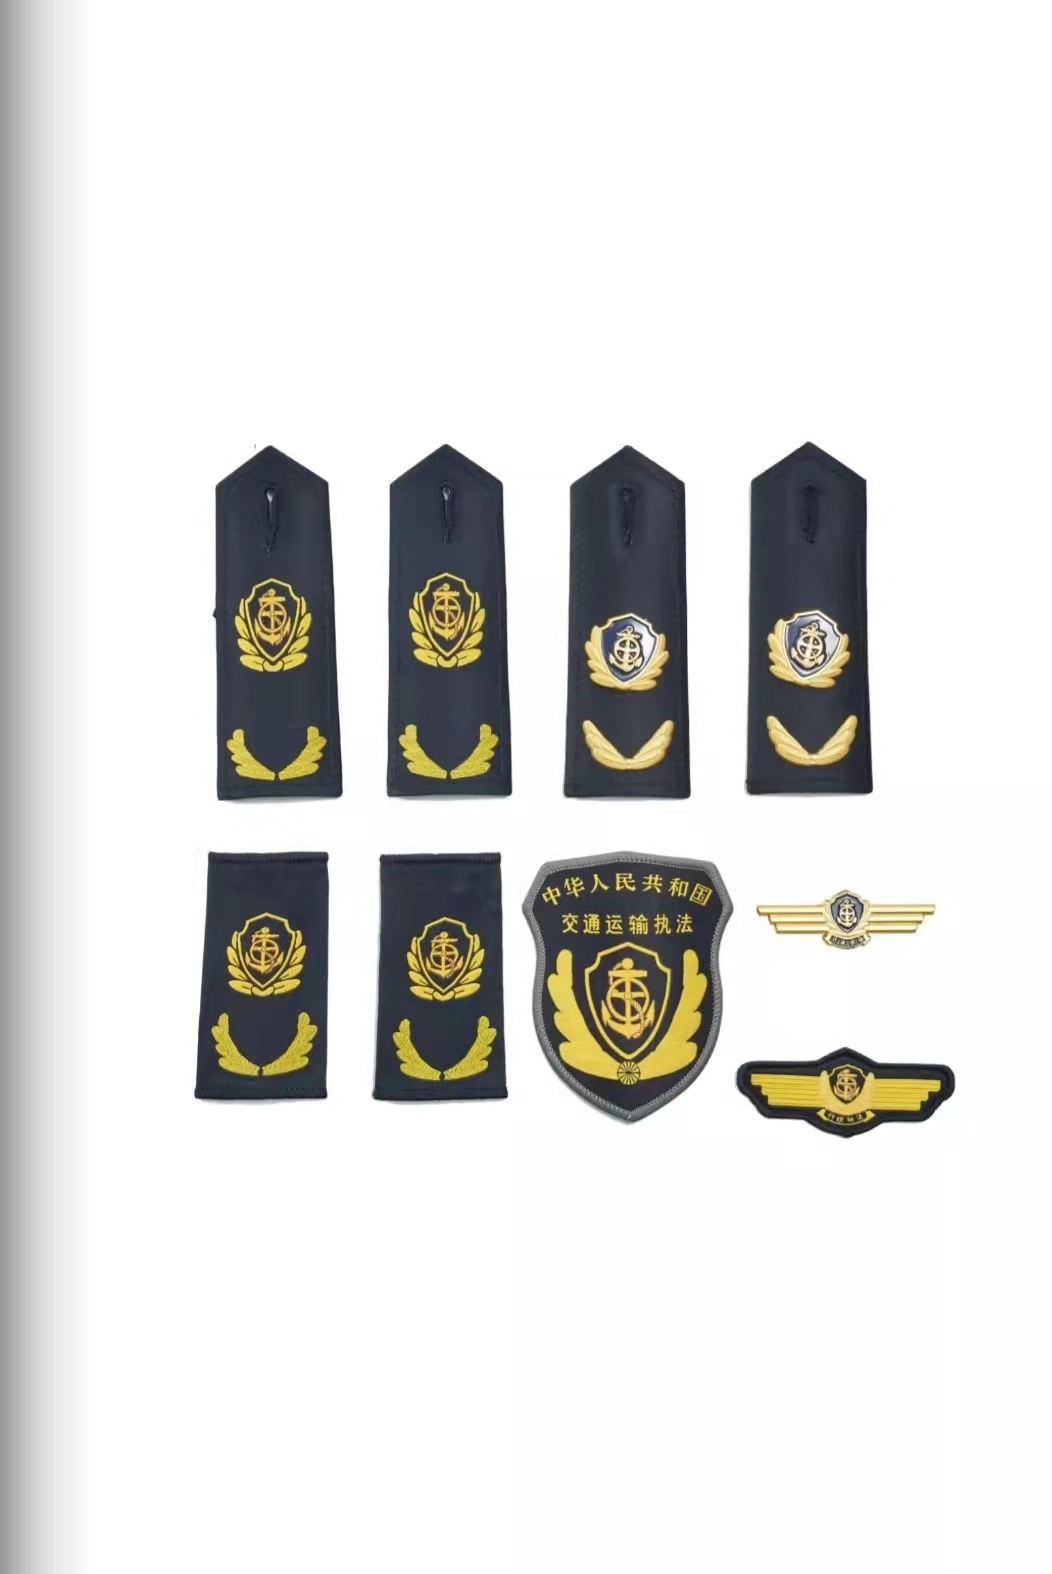 海口六部门统一交通运输执法服装标志